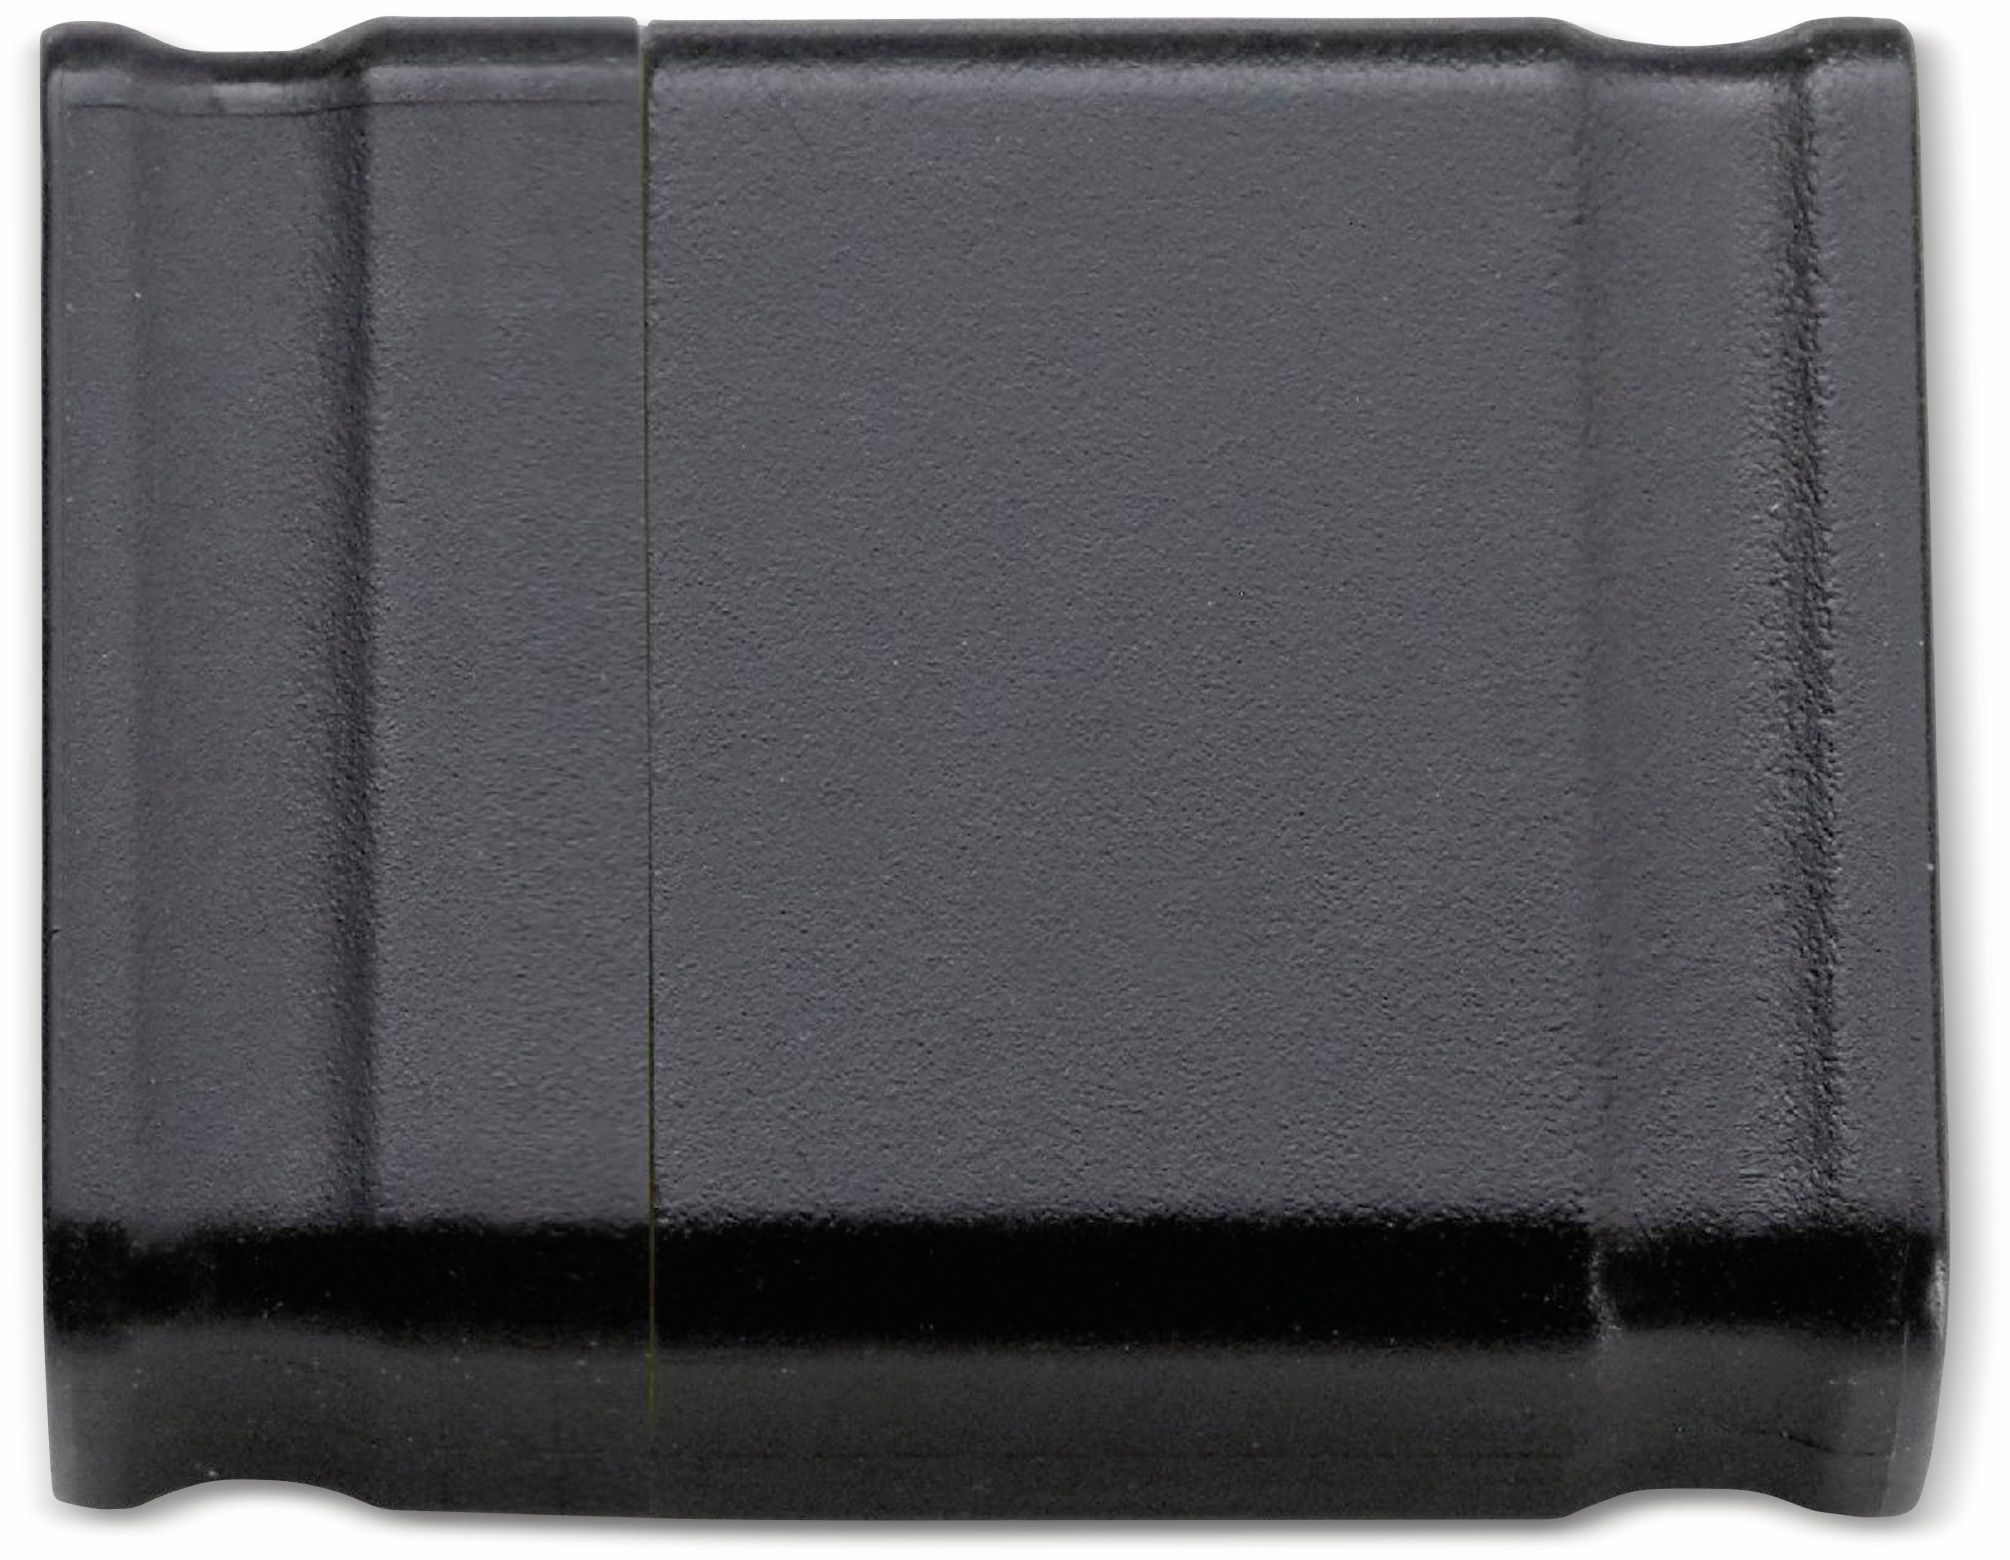 INTENSO 3500450 4GB MICRO-LINE (Schwarz, GB) 4 USB-Stick